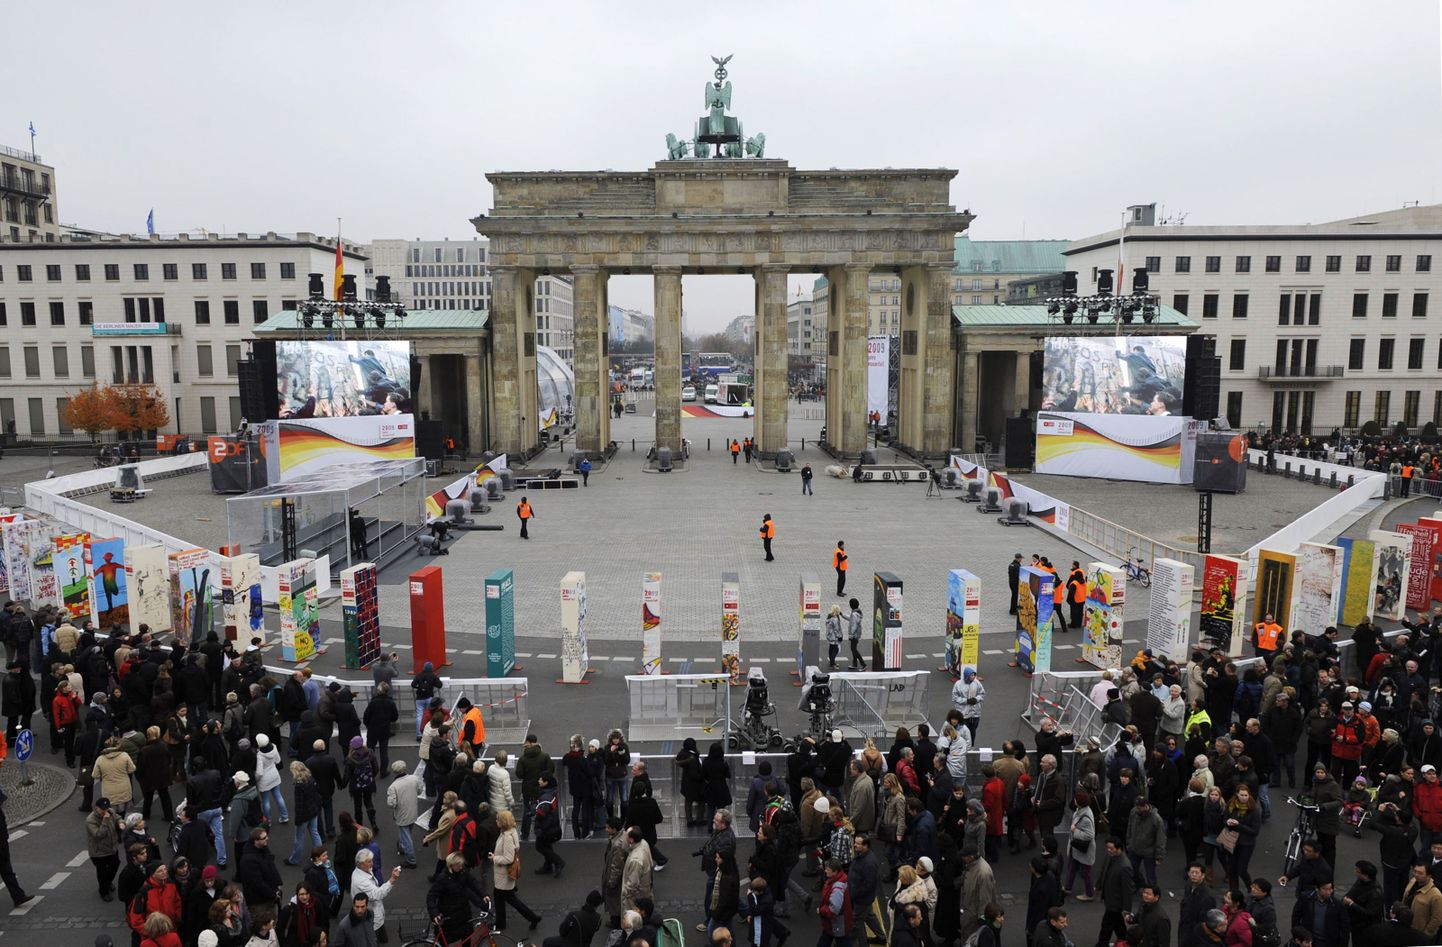 Turistid uudistavad Berliini müüri asukohta tähistavaid erksavärvilisi doominoklotse. Pilt on tehtud 8. novembril.